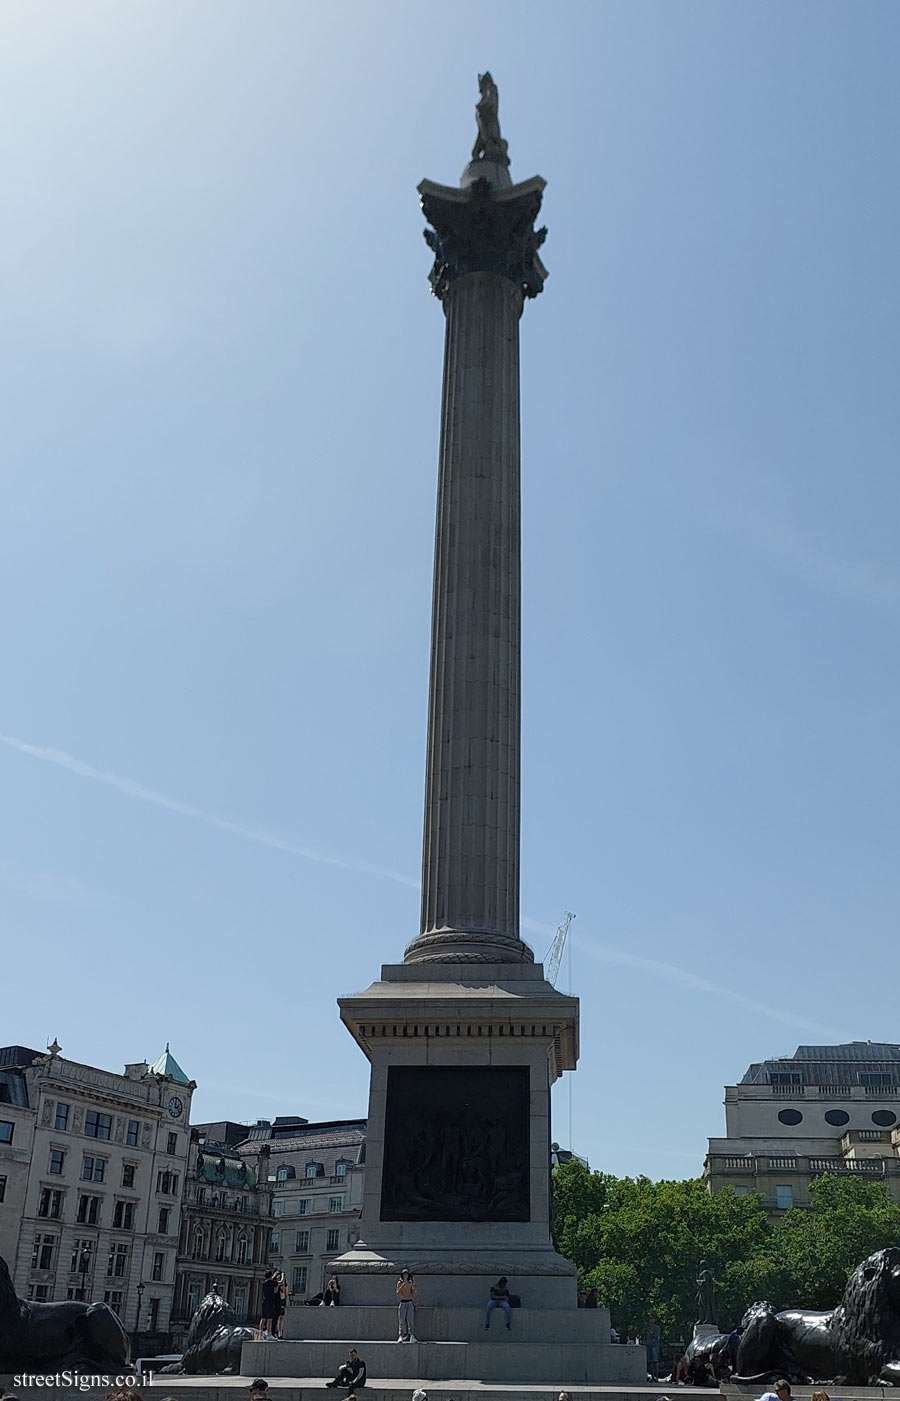 London - Trafalgar Square - Nelson’s Column - Nelson’s Column, London WC2N 5DU, UK